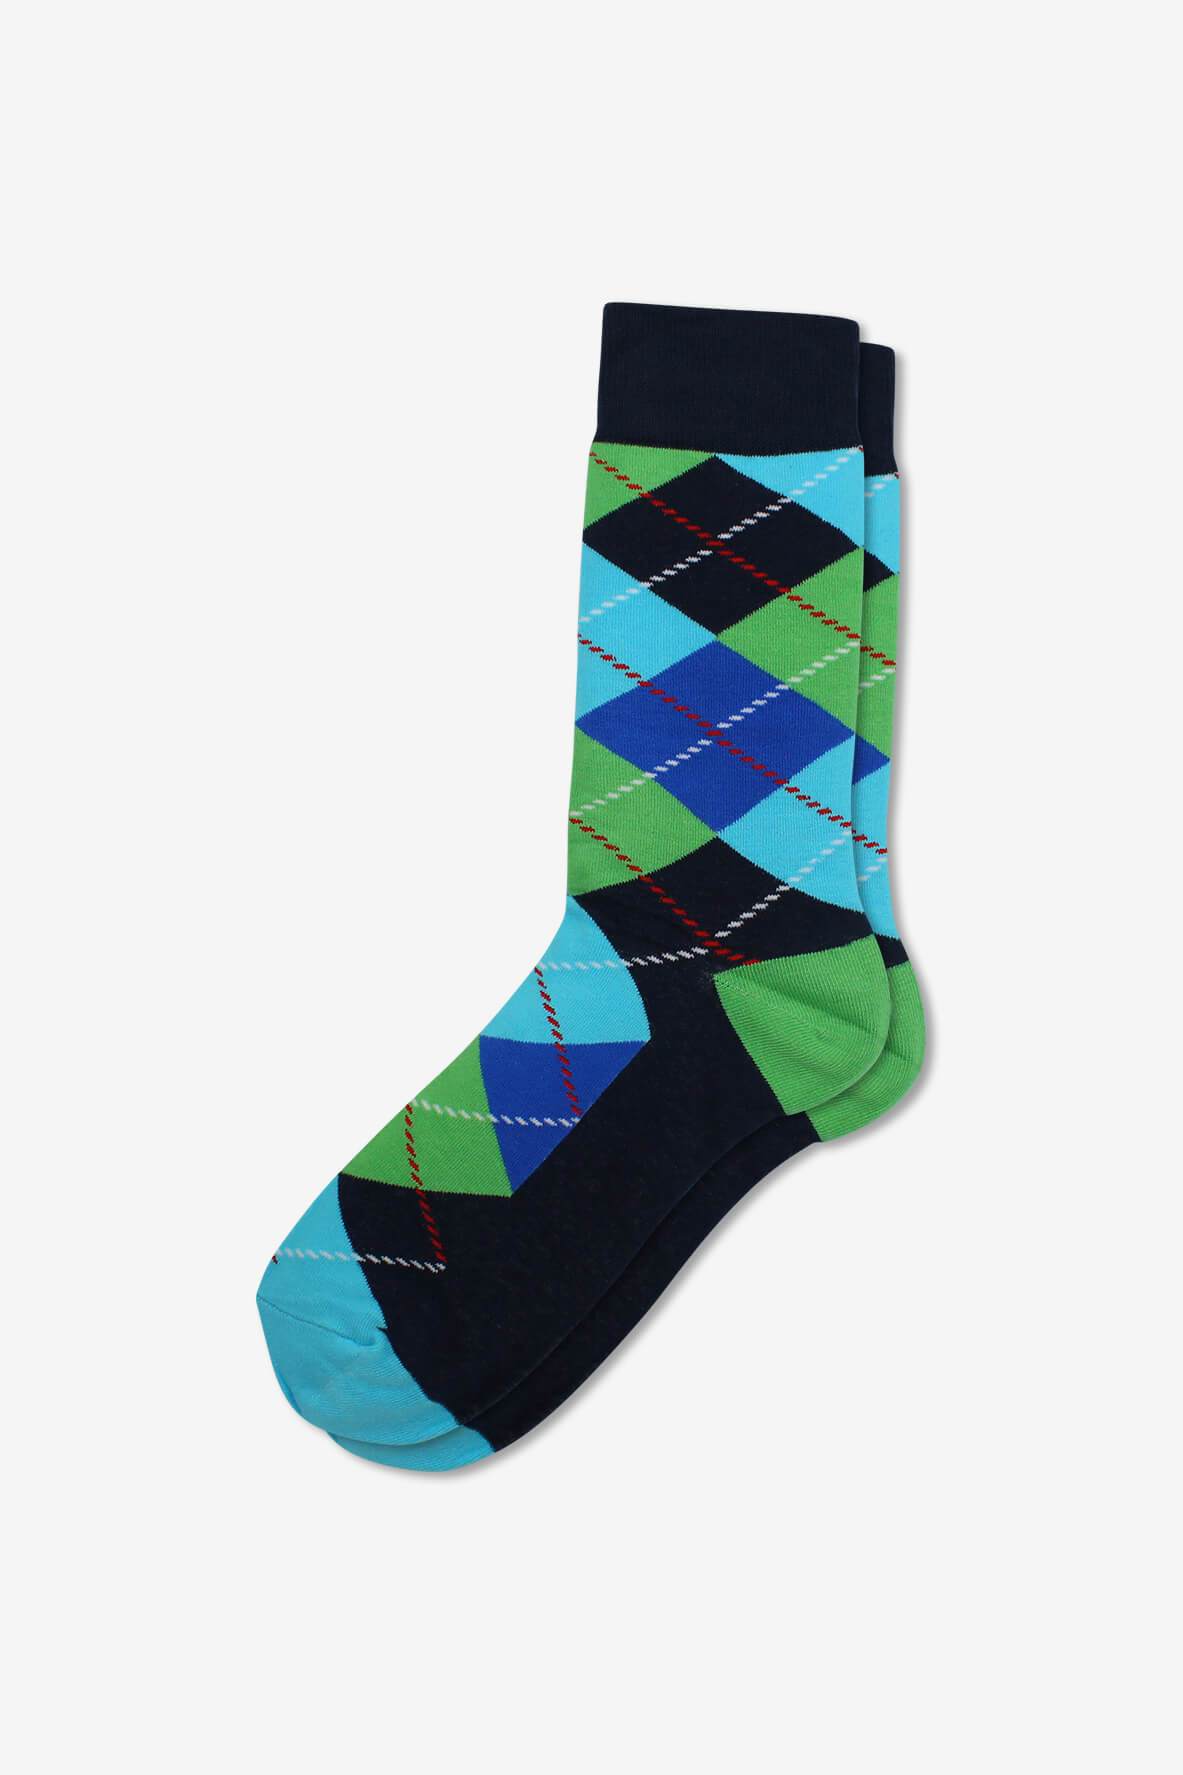 Socks IMG_5236, socks, GoTie